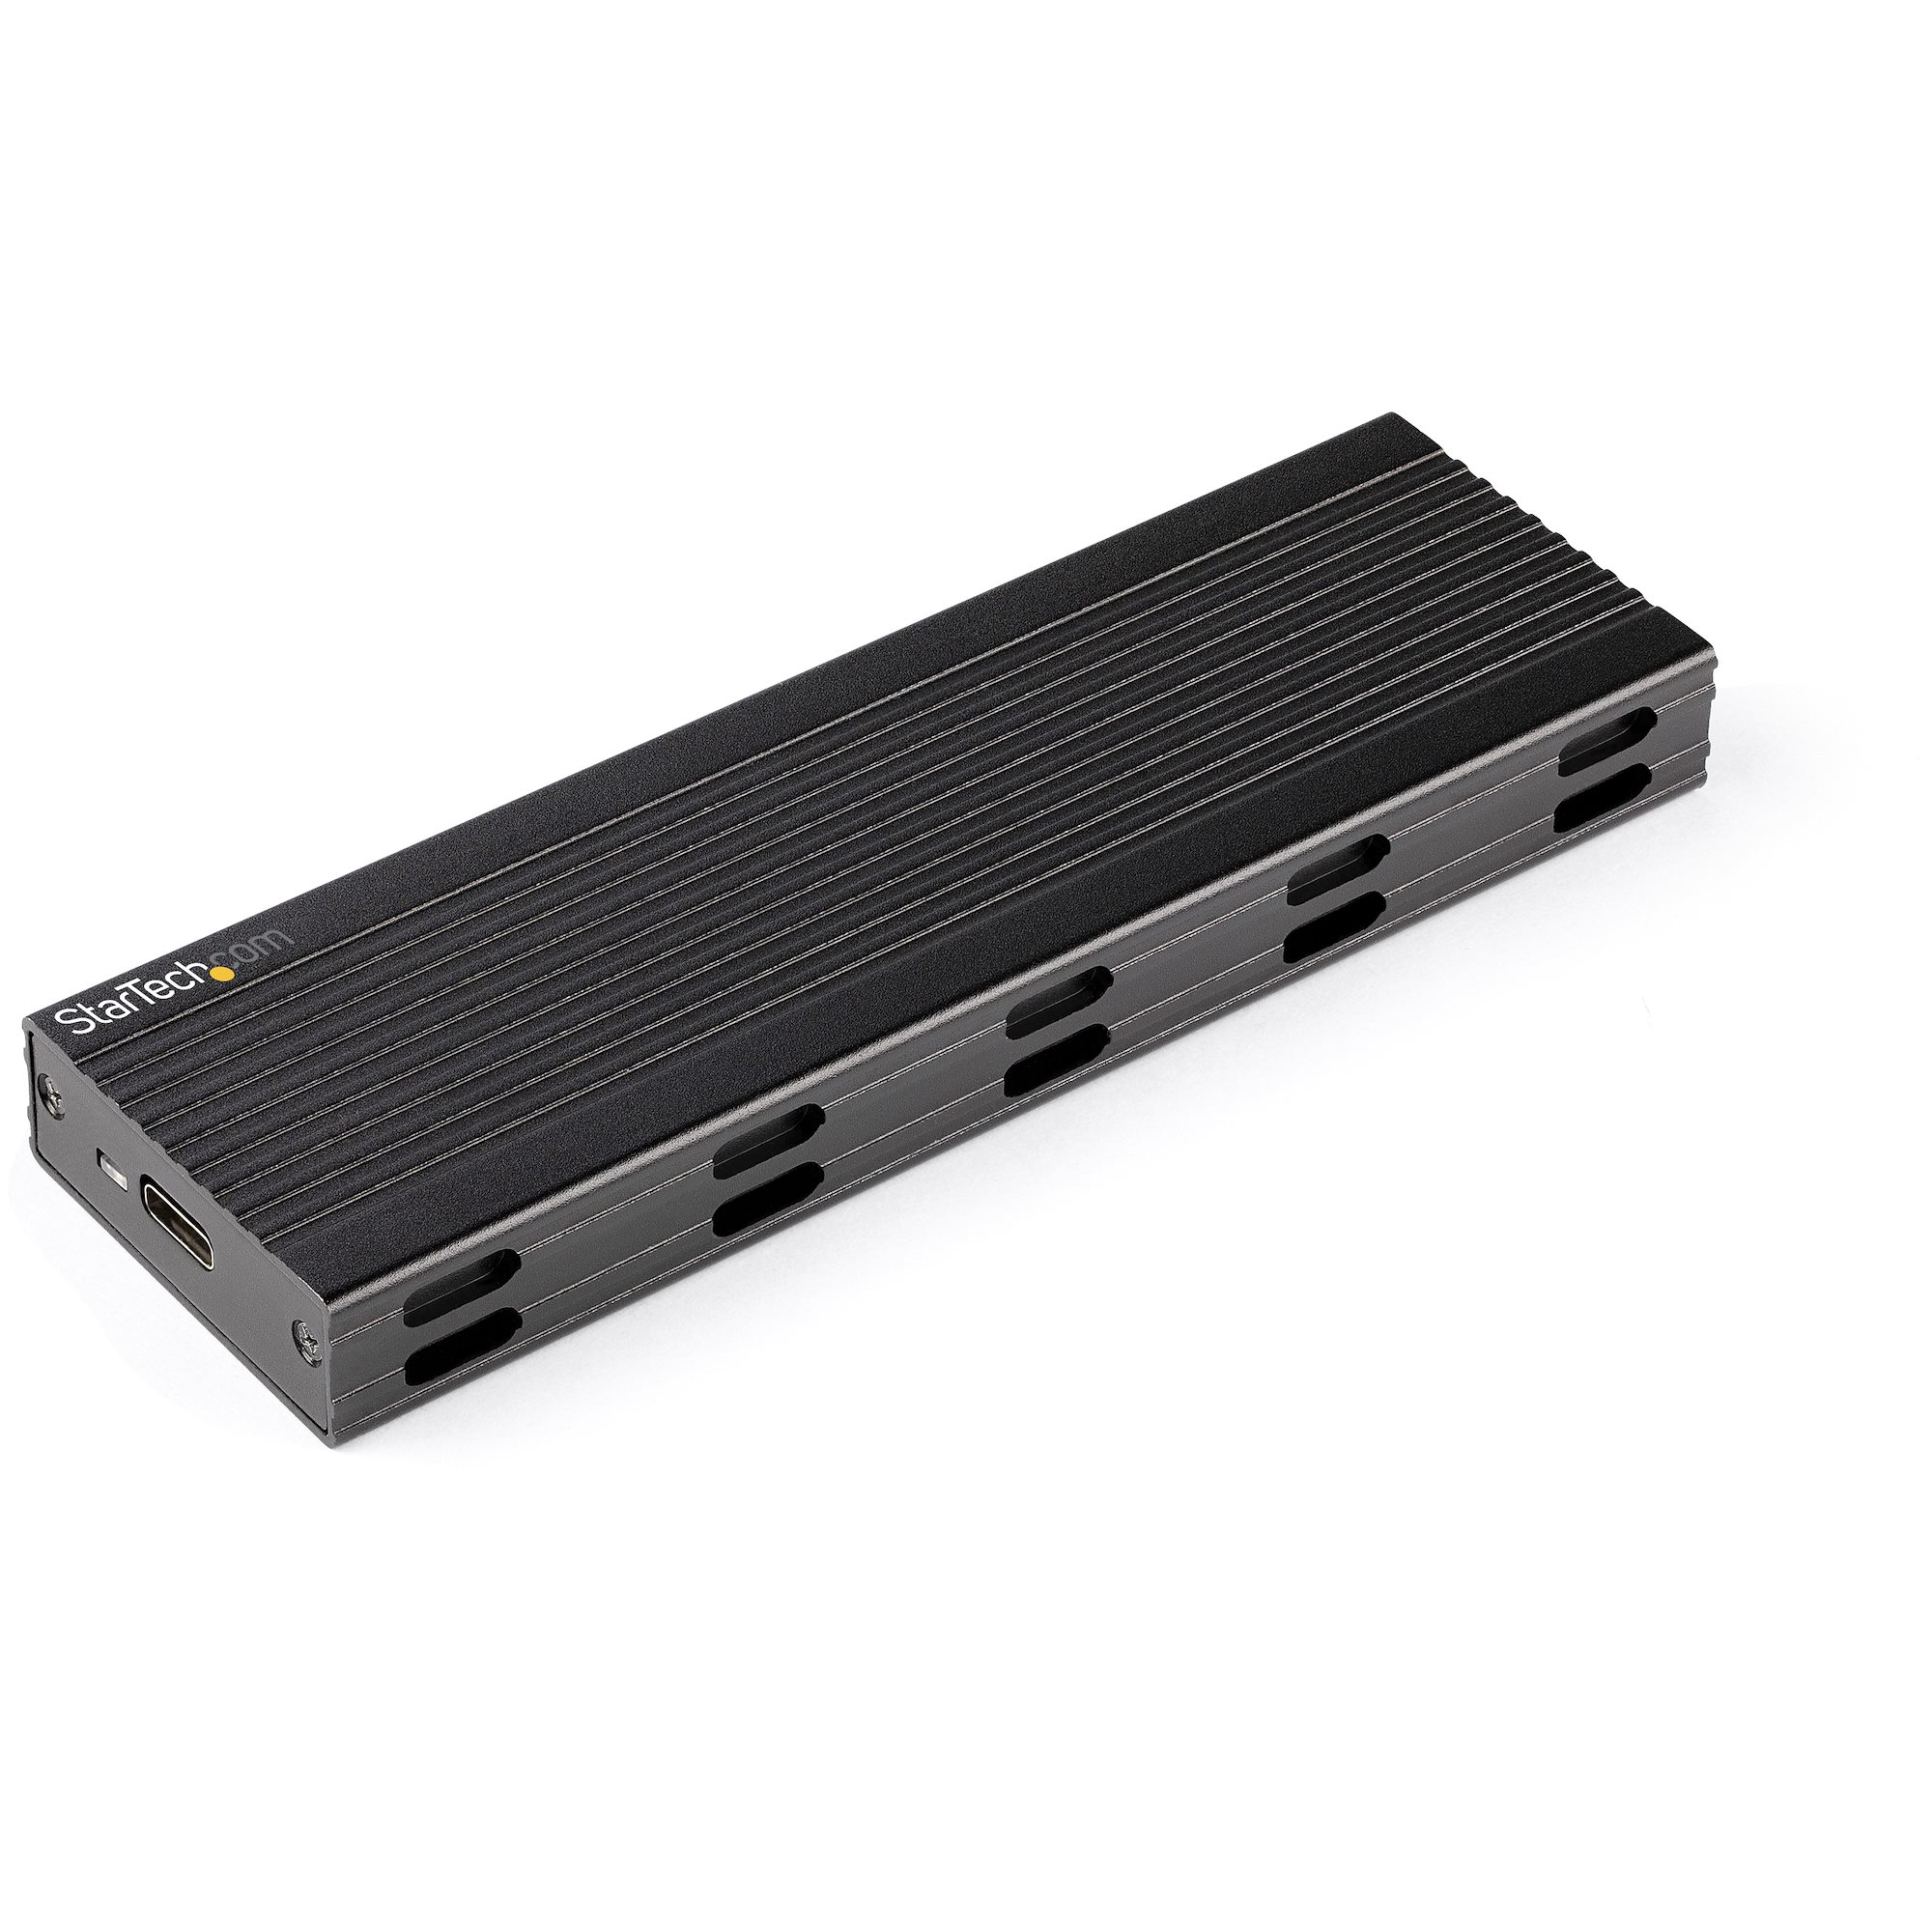 PCIe NVMe/M.2 SATA SSD USB Enclosure - External Drive | StarTech.com